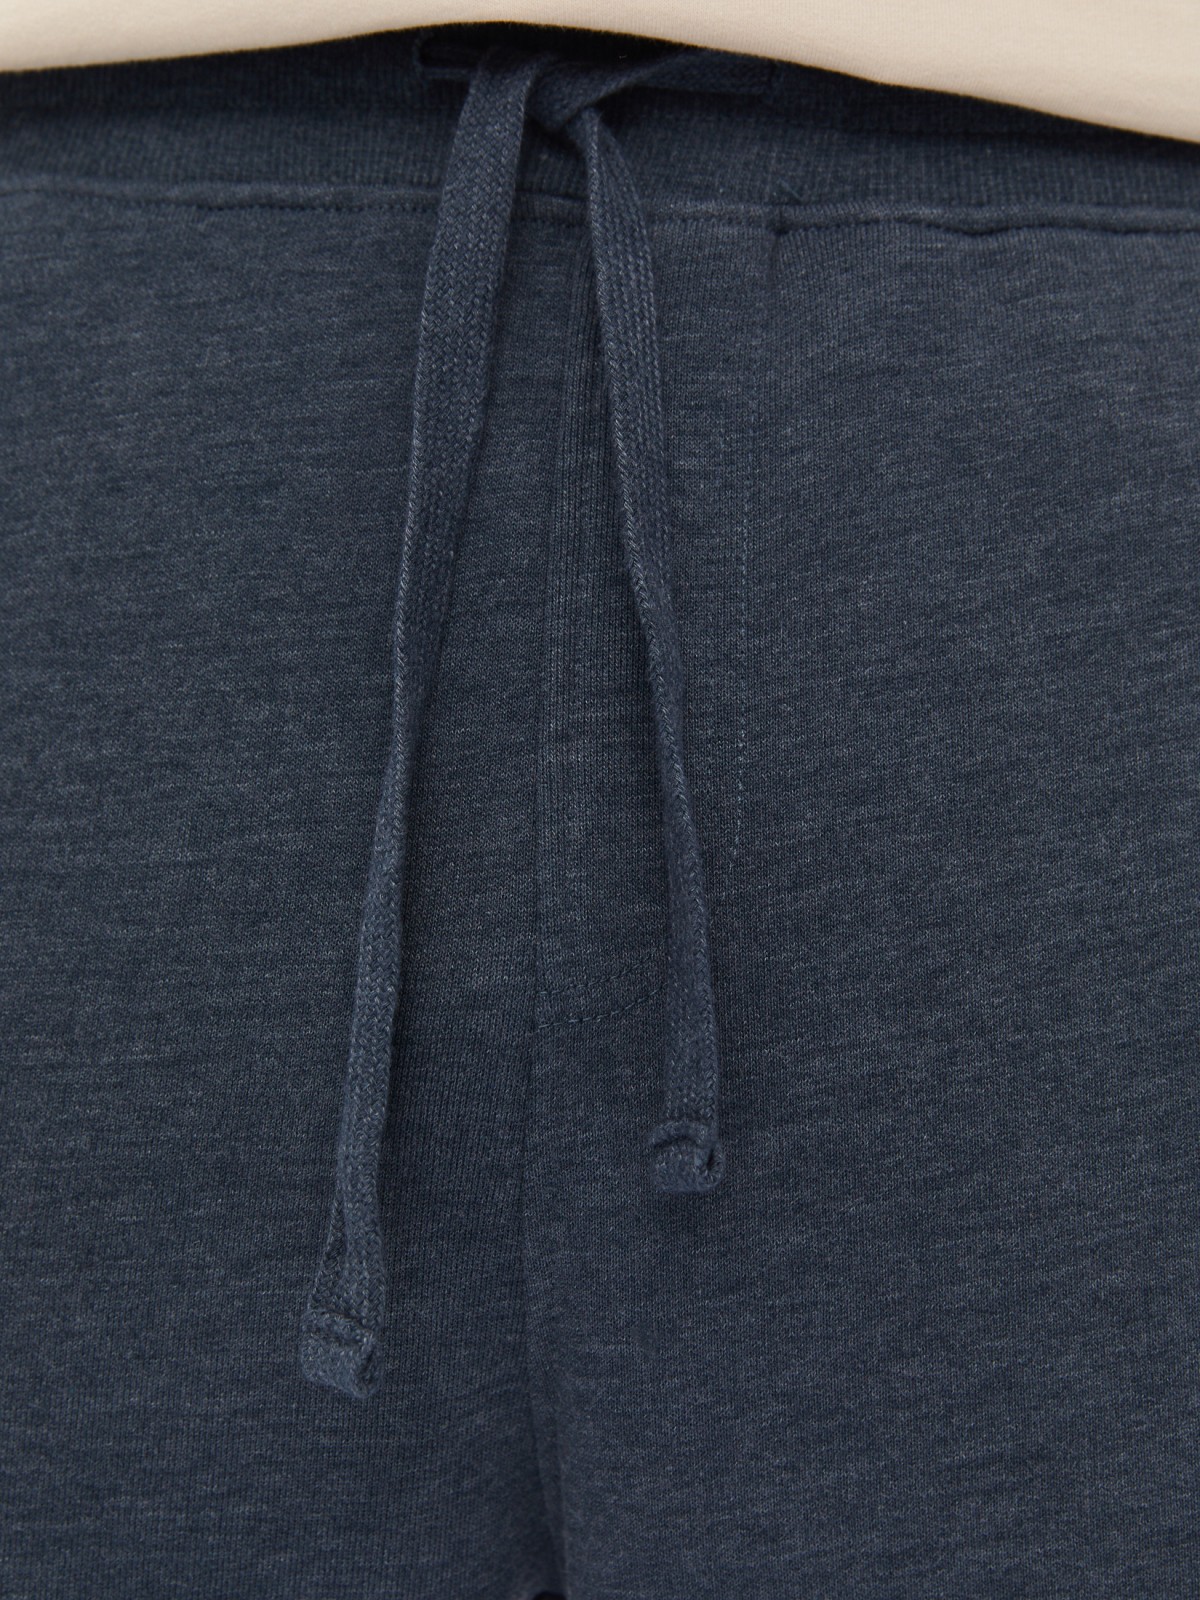 Трикотажные брюки-джоггеры в спортивном стиле zolla 014137675082, цвет темно-бирюзовый, размер M - фото 4